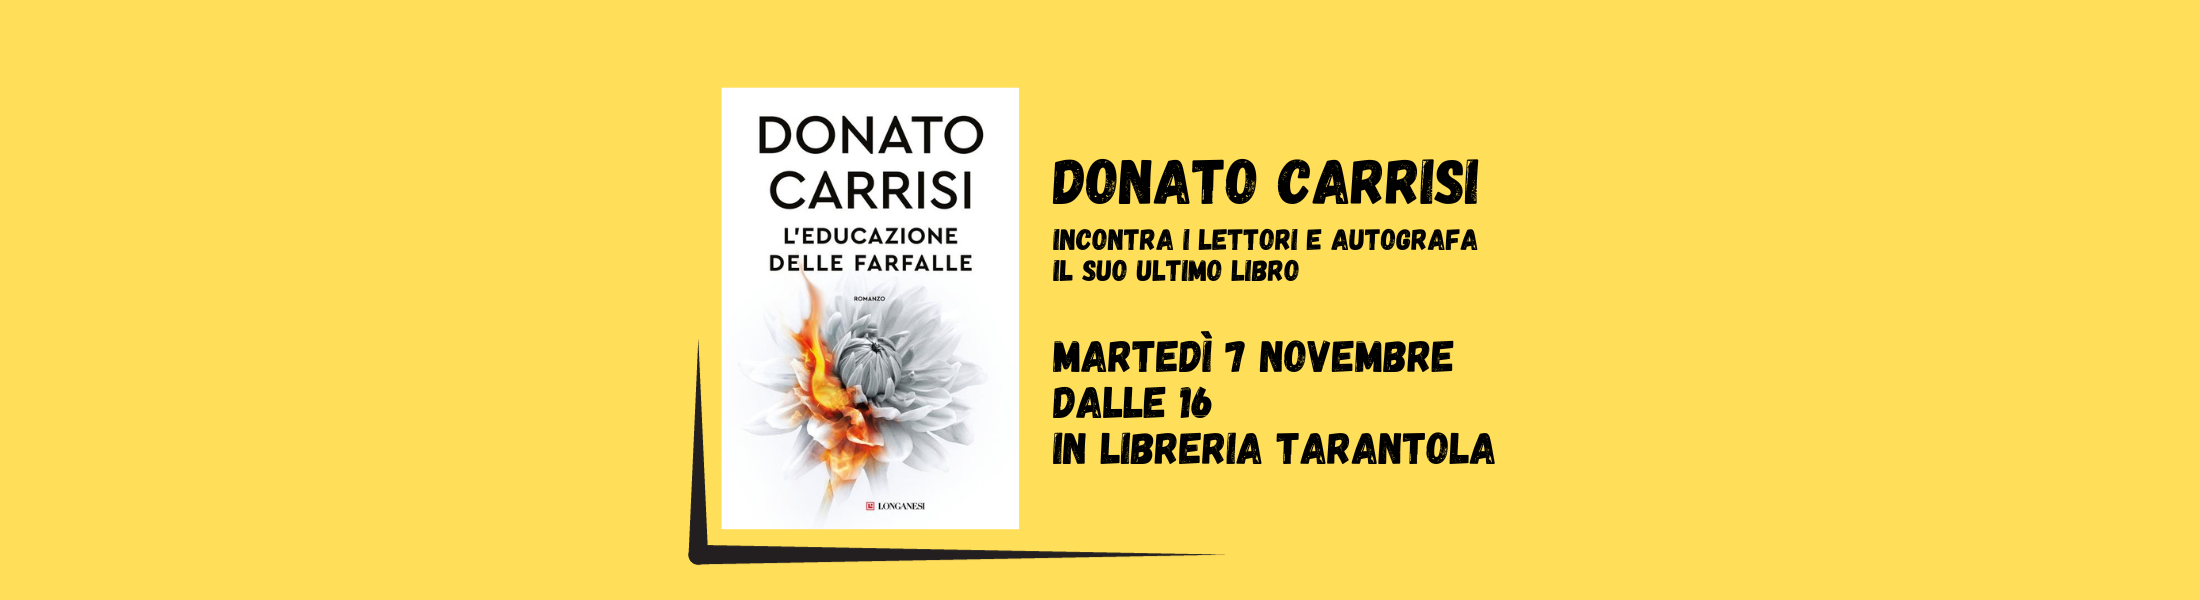 Donato Carrisi incontra i lettori – Comune di Sesto San Giovanni